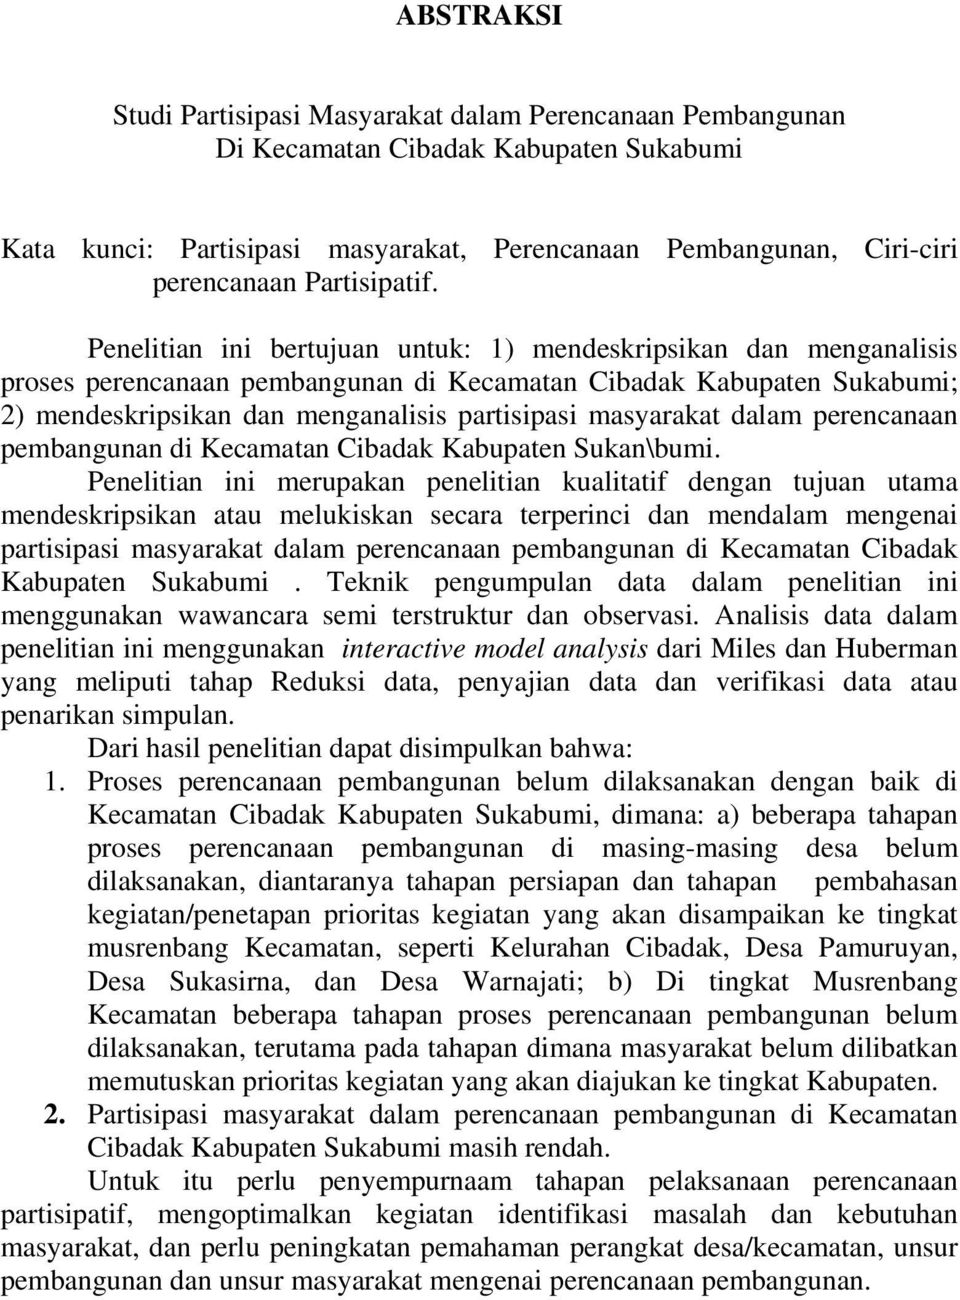 Penelitian ini bertujuan untuk: 1) mendeskripsikan dan menganalisis proses perencanaan pembangunan di Kecamatan Cibadak Kabupaten Sukabumi; 2) mendeskripsikan dan menganalisis partisipasi masyarakat